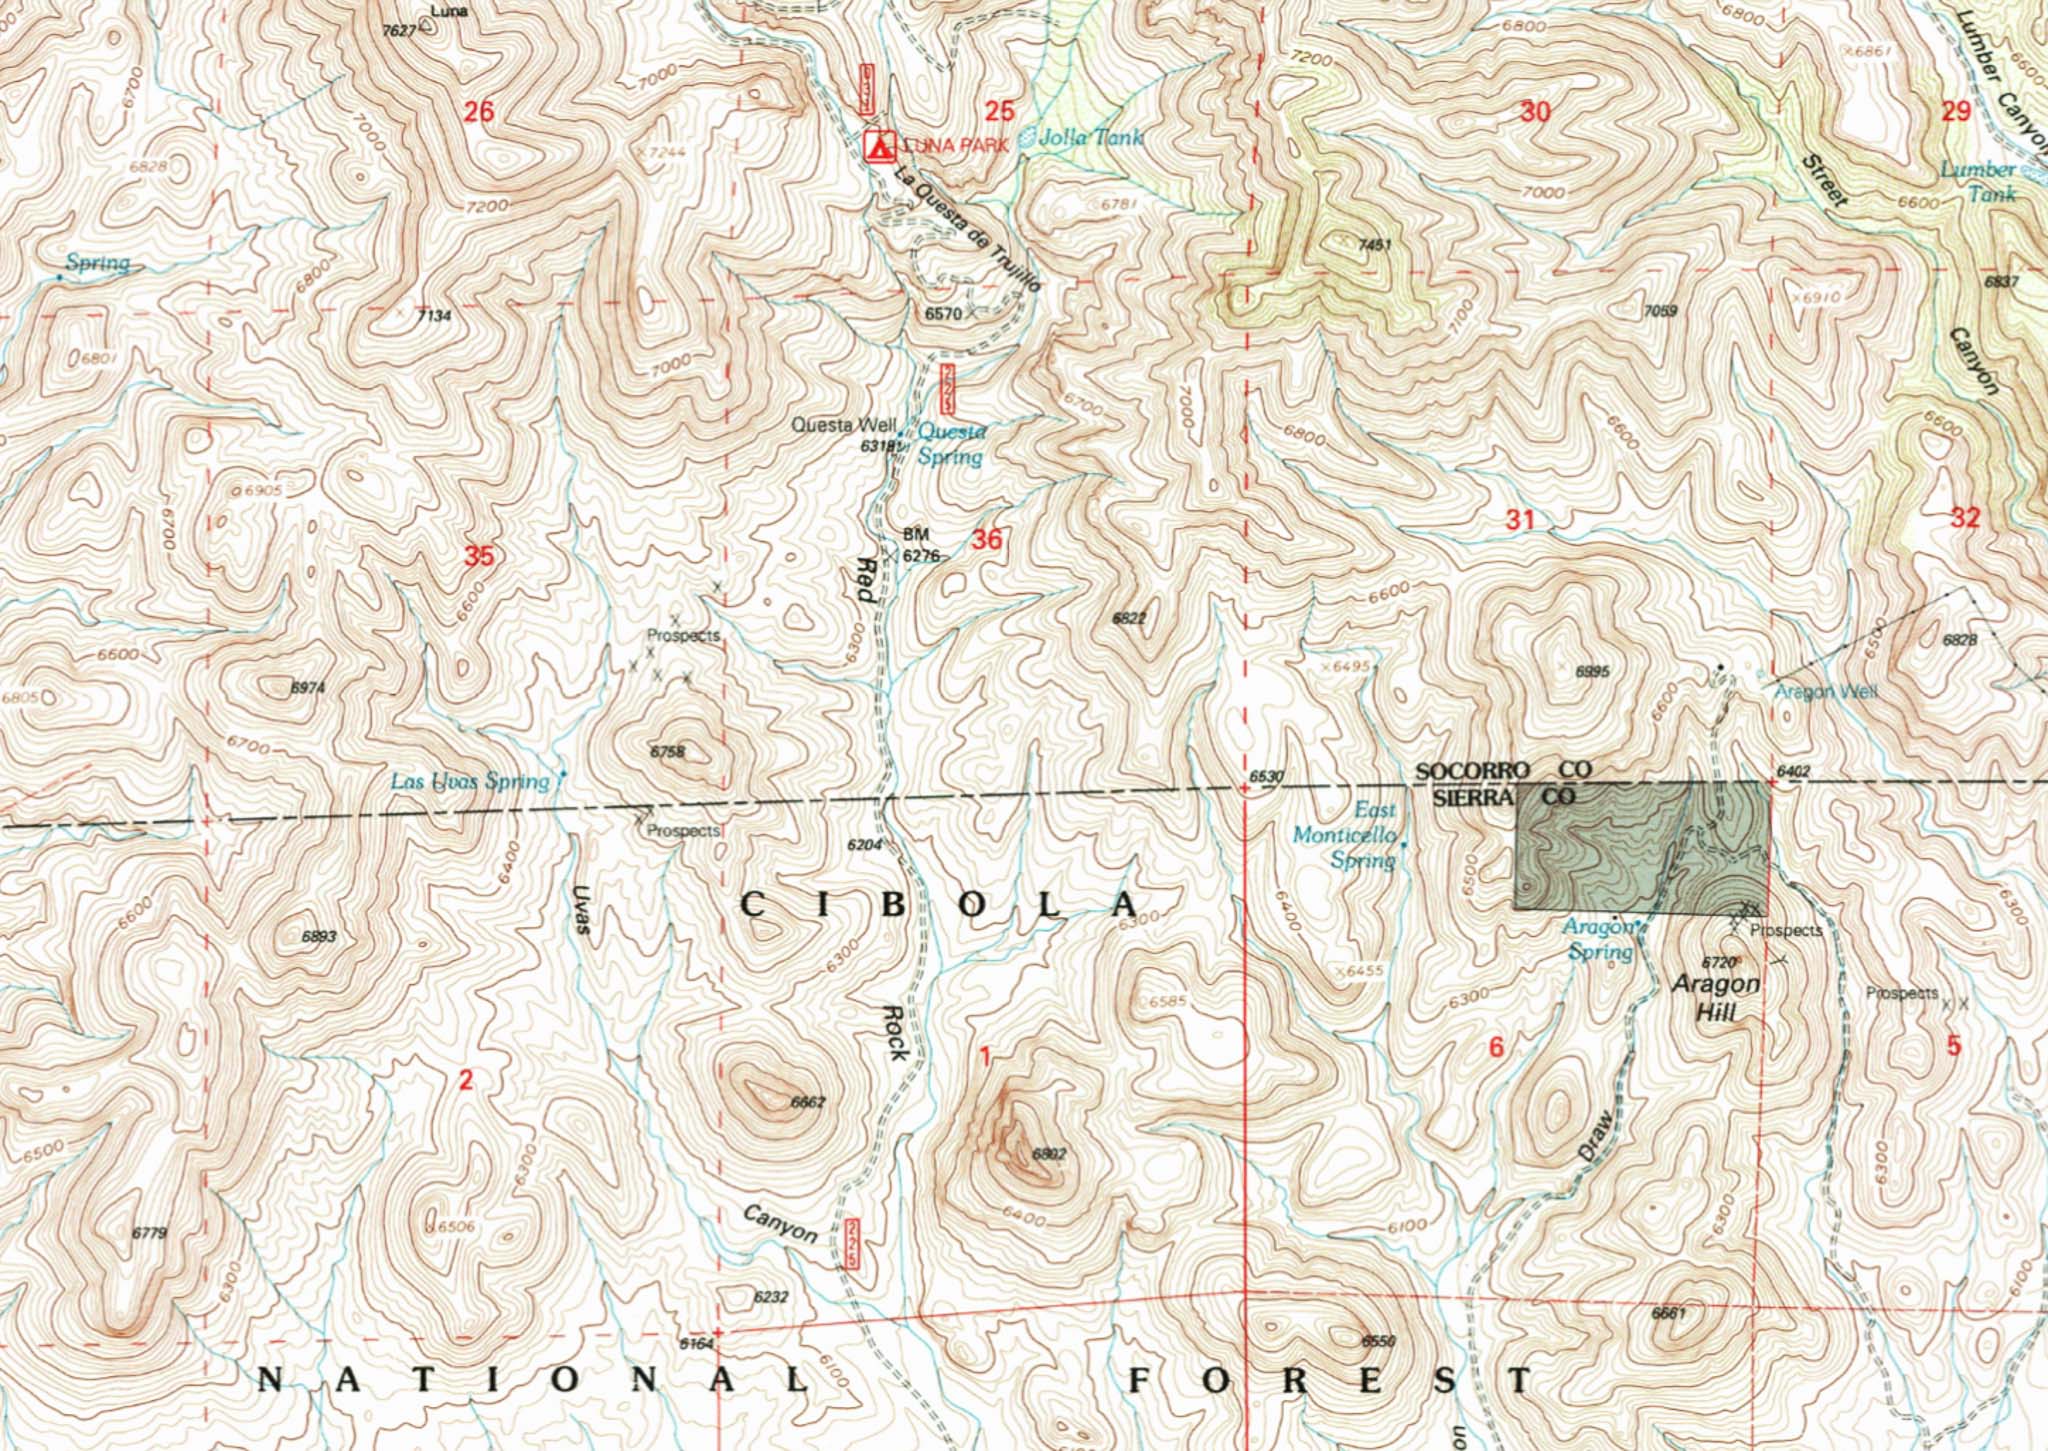 USGS Monticello NM Topo Map with La Questa de Trujillo